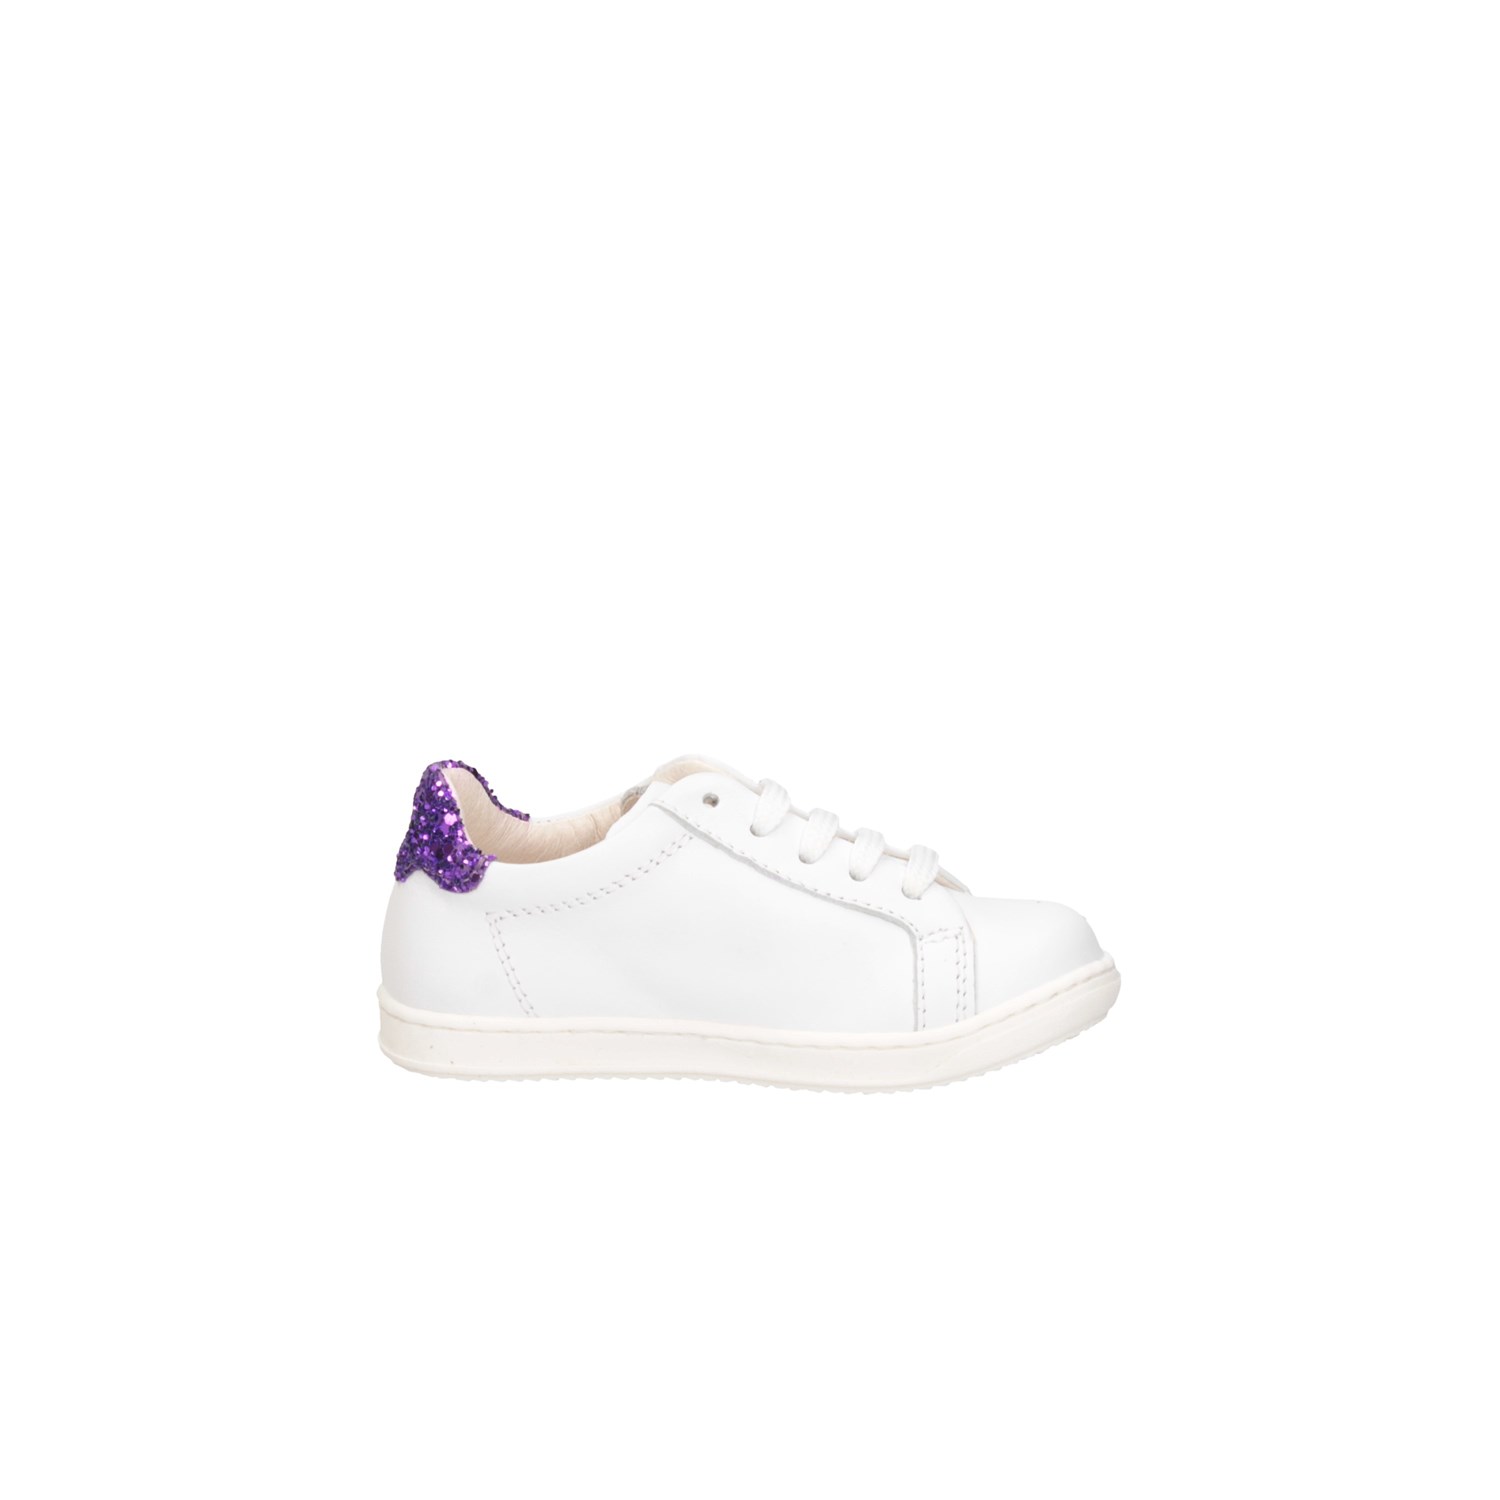 Gioiecologiche 5107 White / purple Shoes Child 